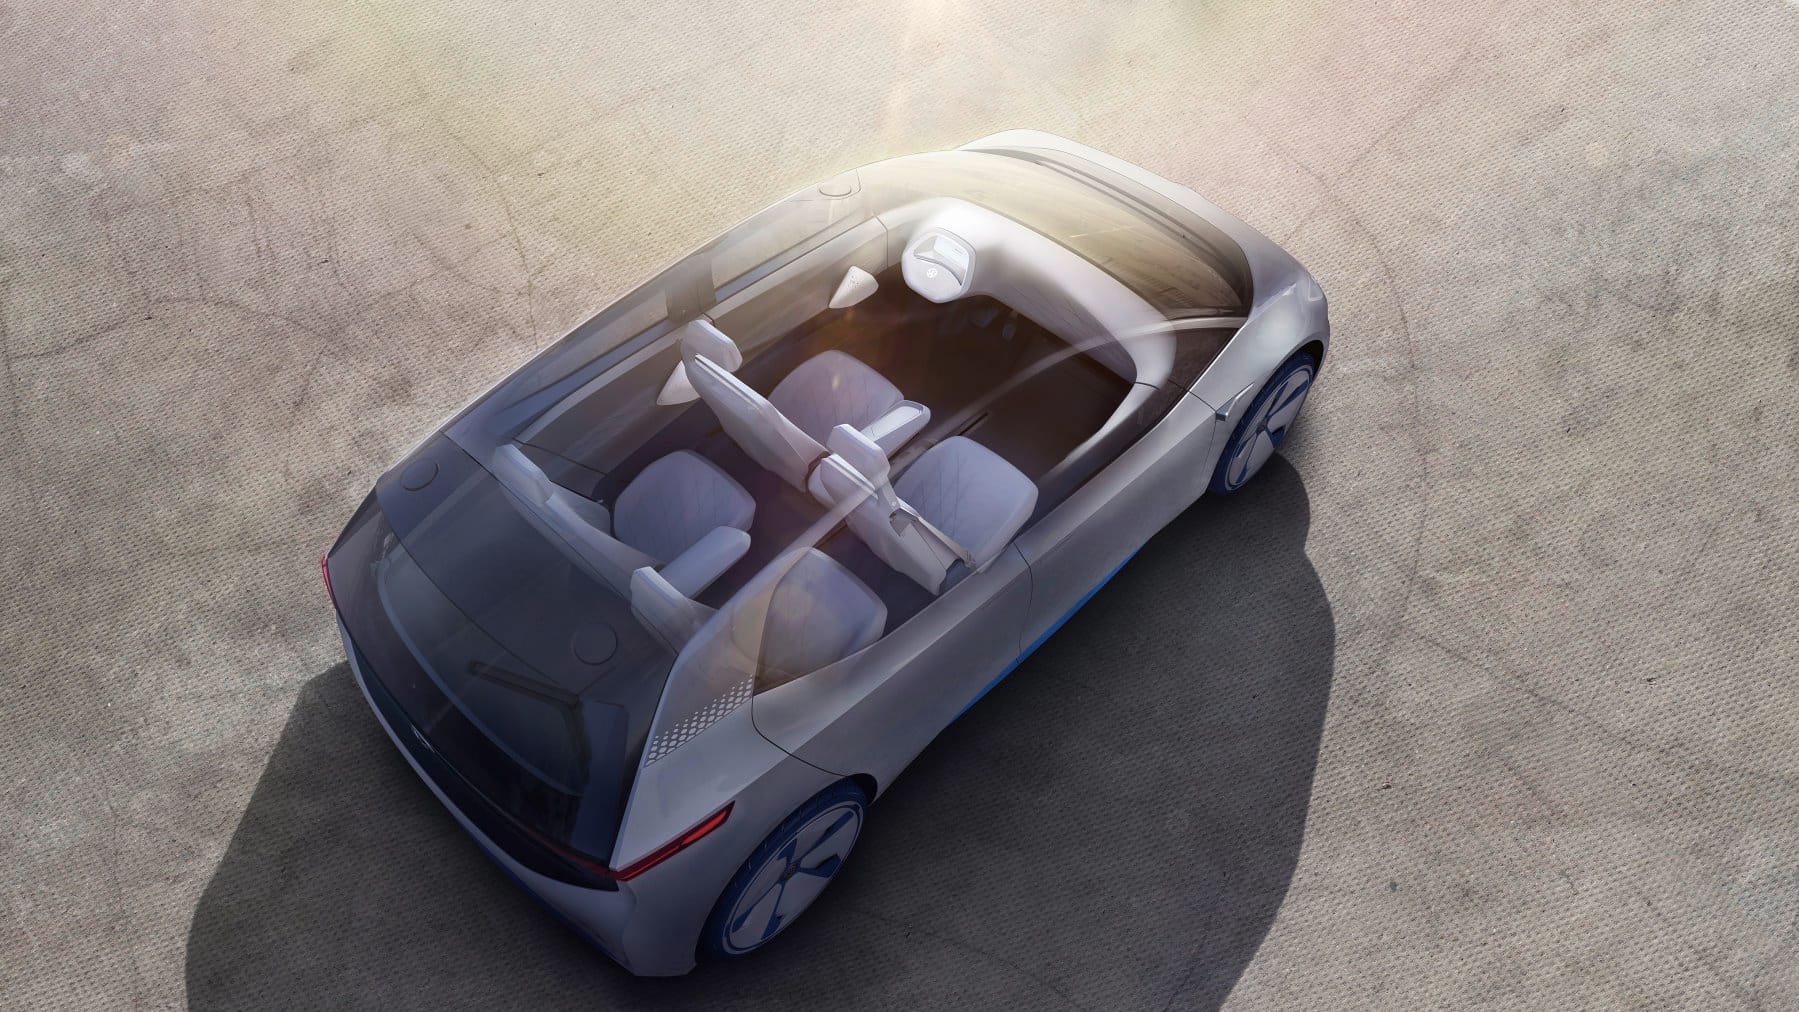 Vier Personen finde Innen Platz - für etwa 30.000 Euro soll der VW I.D. ab 2020 zu haben sein.